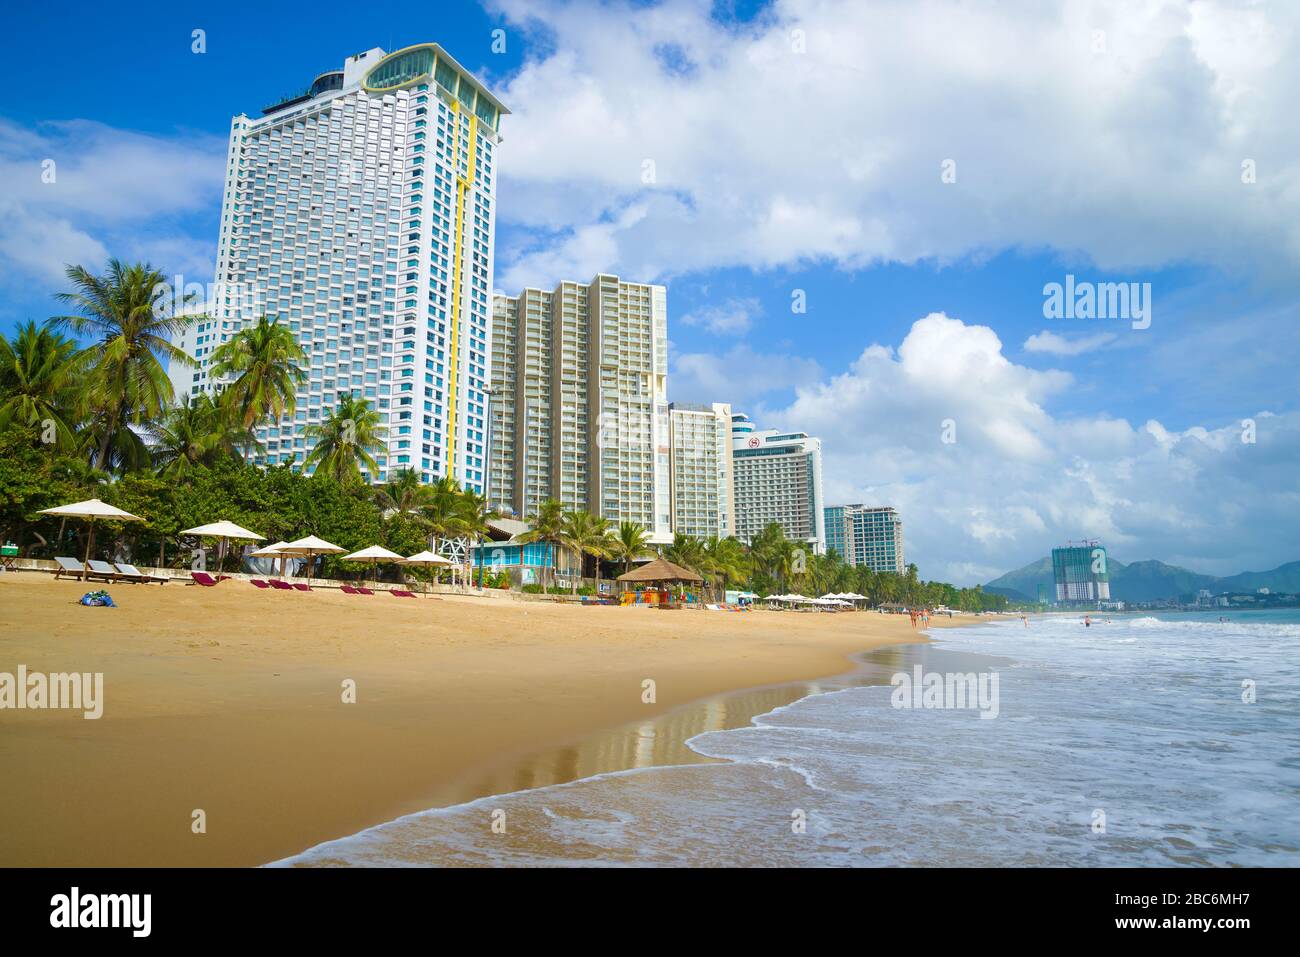 NHA TRANG, VIETNAM - DECEMBER 30, 2015: Sunny day at the downtown Nha Trang beach Stock Photo